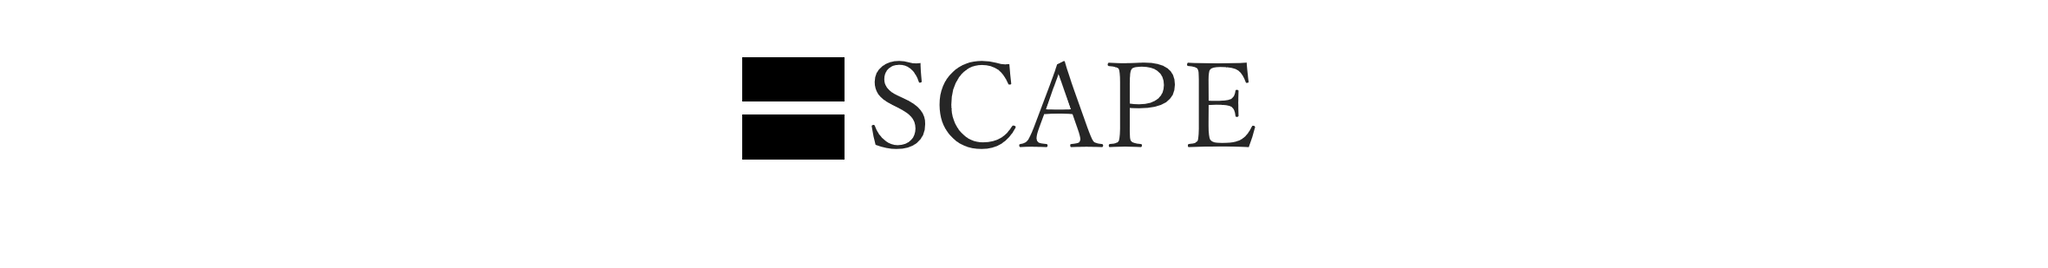 SCAPE｜どこでもカーテン「スケープ」 - サイズ調整自由自在